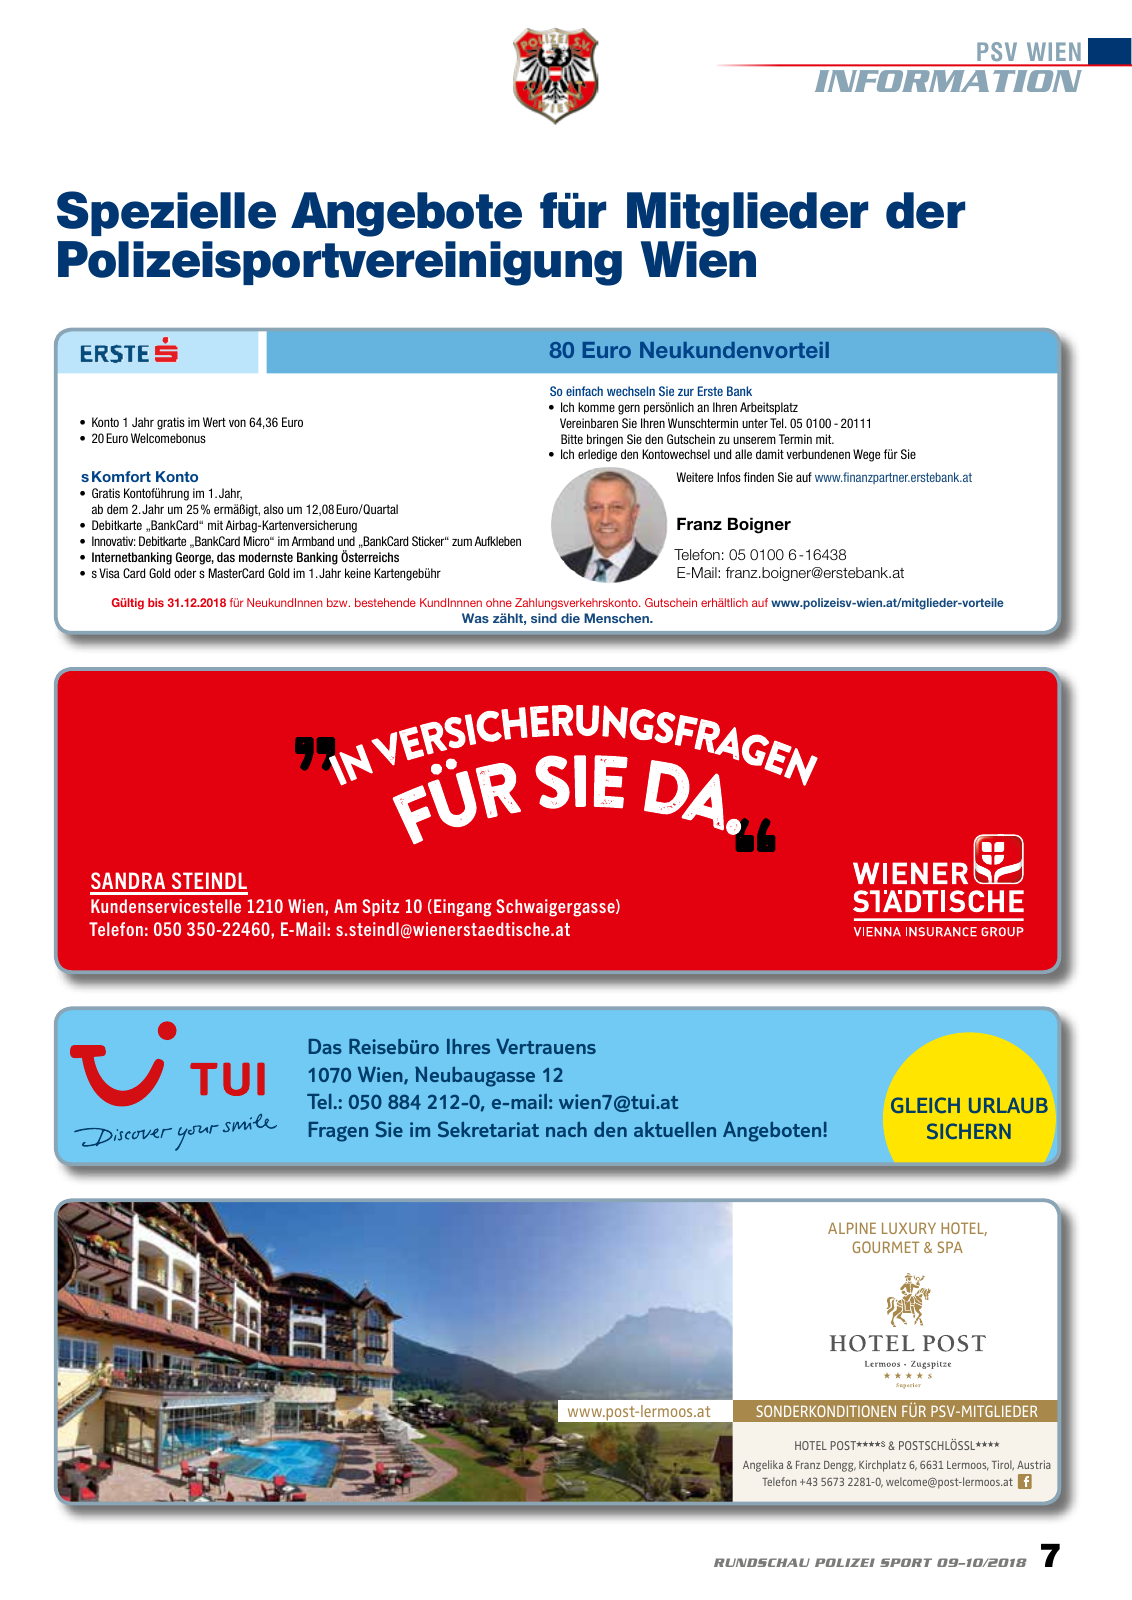 Vorschau Rundschau Polizei Sport 09-10/2018 Seite 7